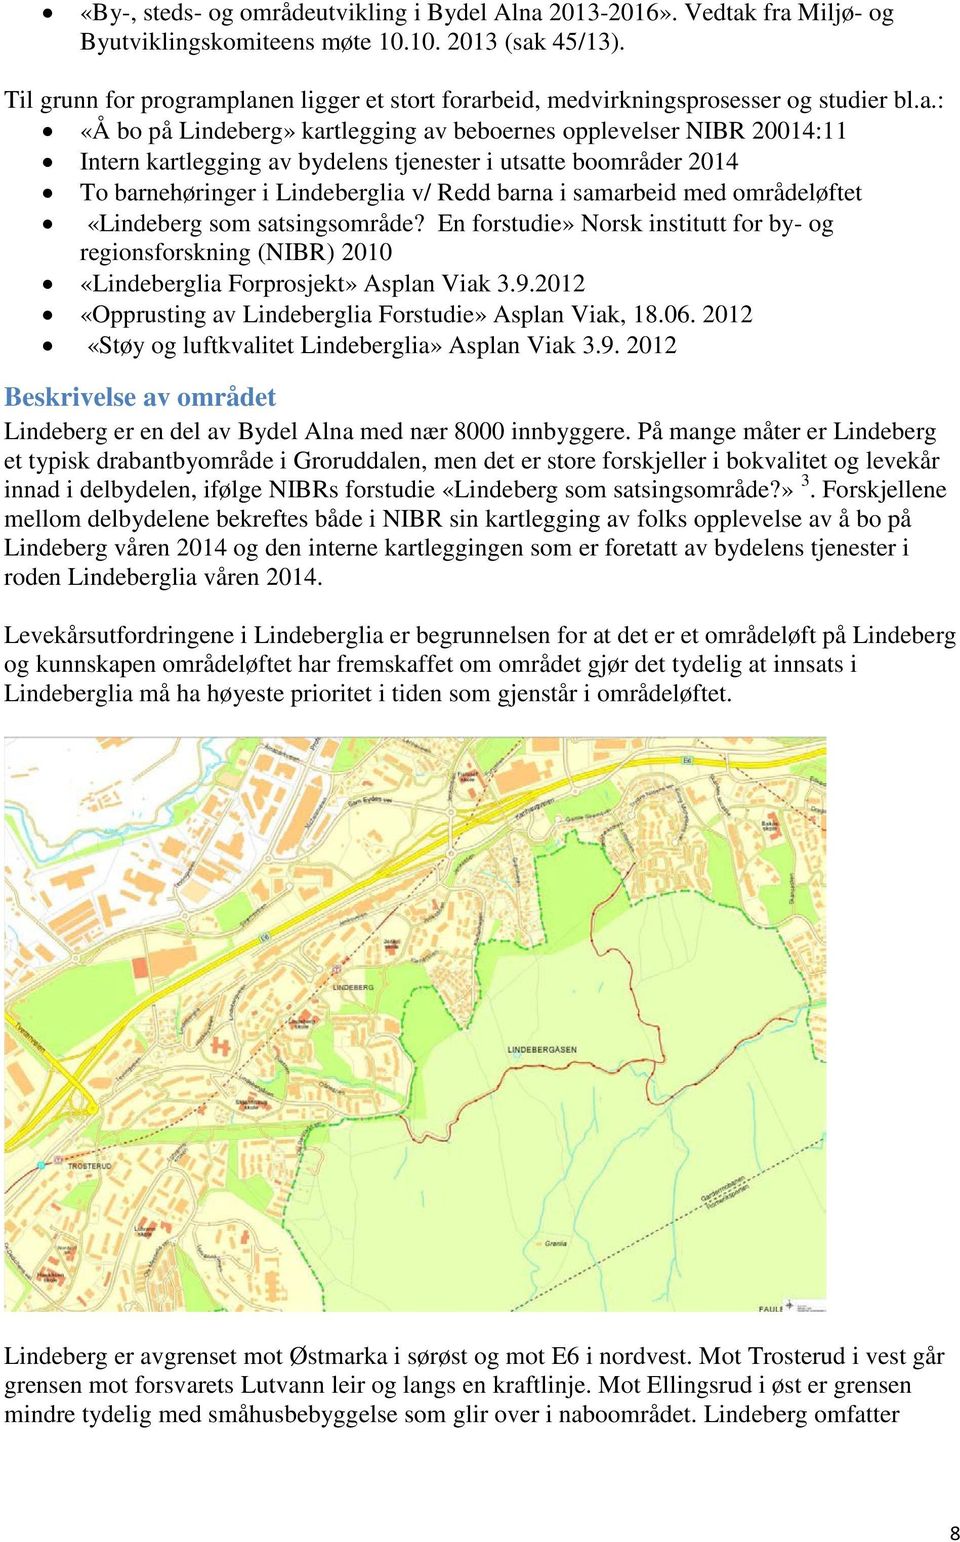 planen ligger et stort forarbeid, medvirkningsprosesser og studier bl.a.: «Å bo på Lindeberg» kartlegging av beboernes opplevelser NIBR 20014:11 Intern kartlegging av bydelens tjenester i utsatte